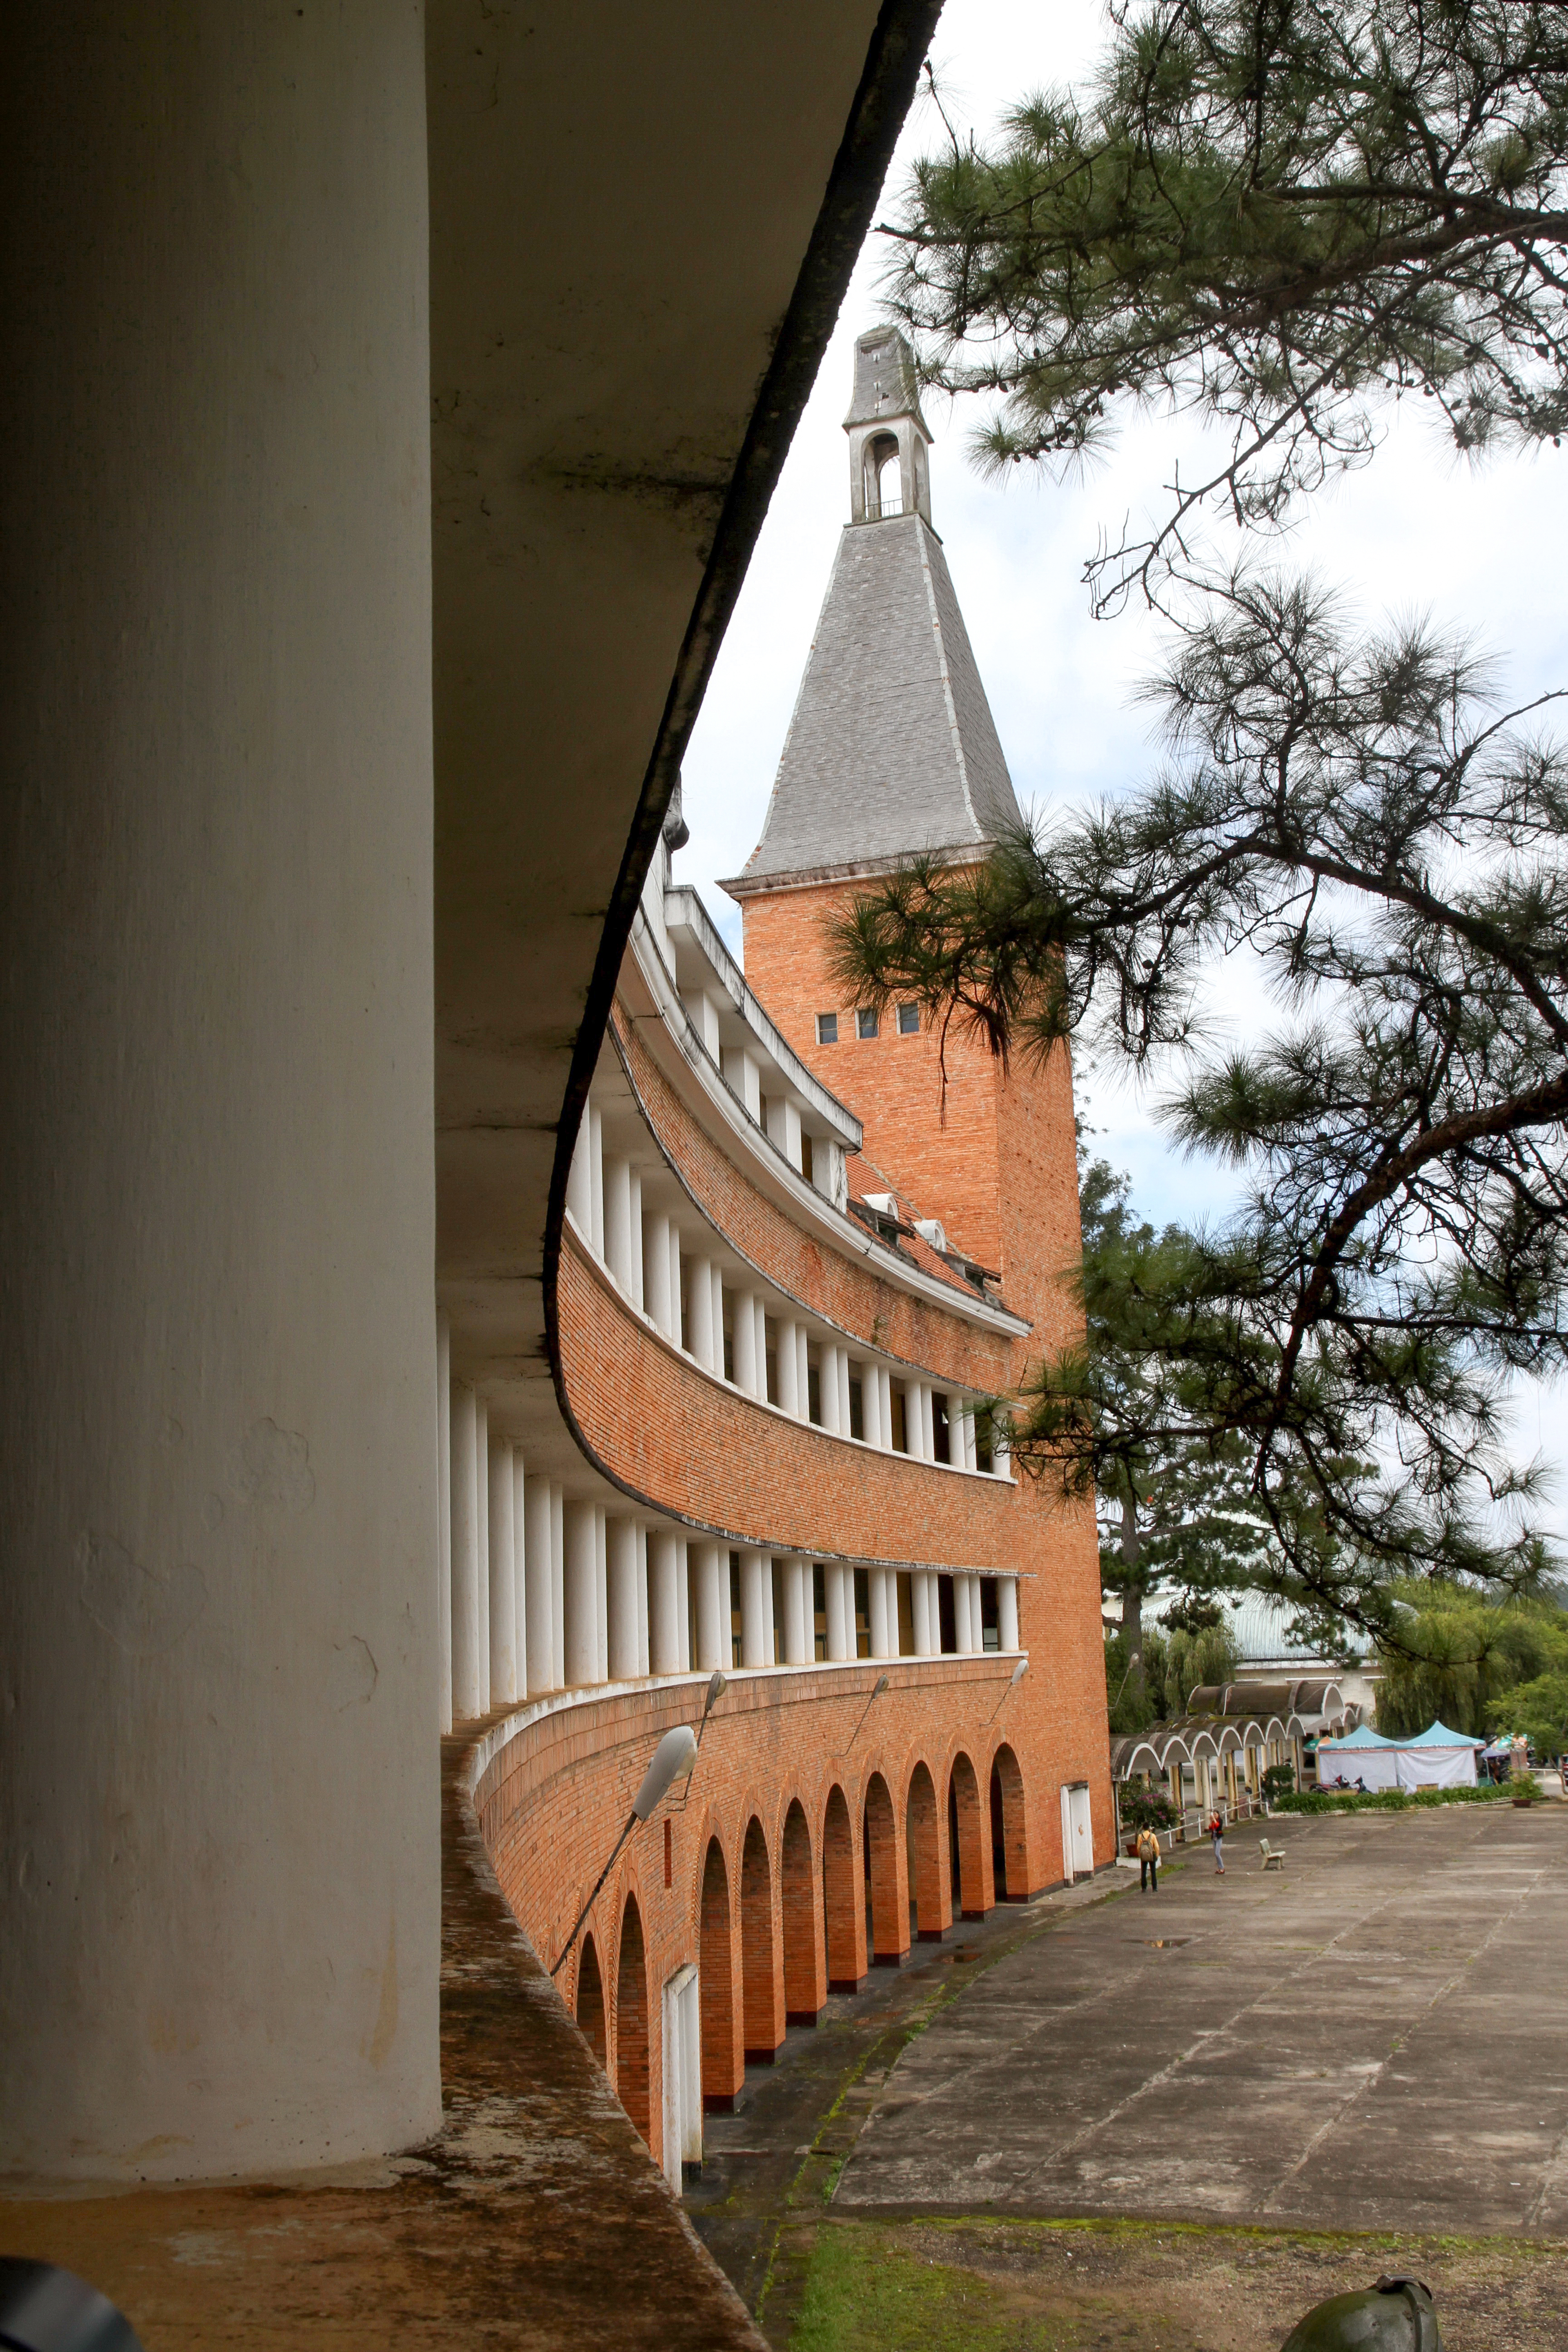 Trường Cao đẳng Sư phạm Đà Lạt còn được công nhận là di tích kiến trúc quốc gia.